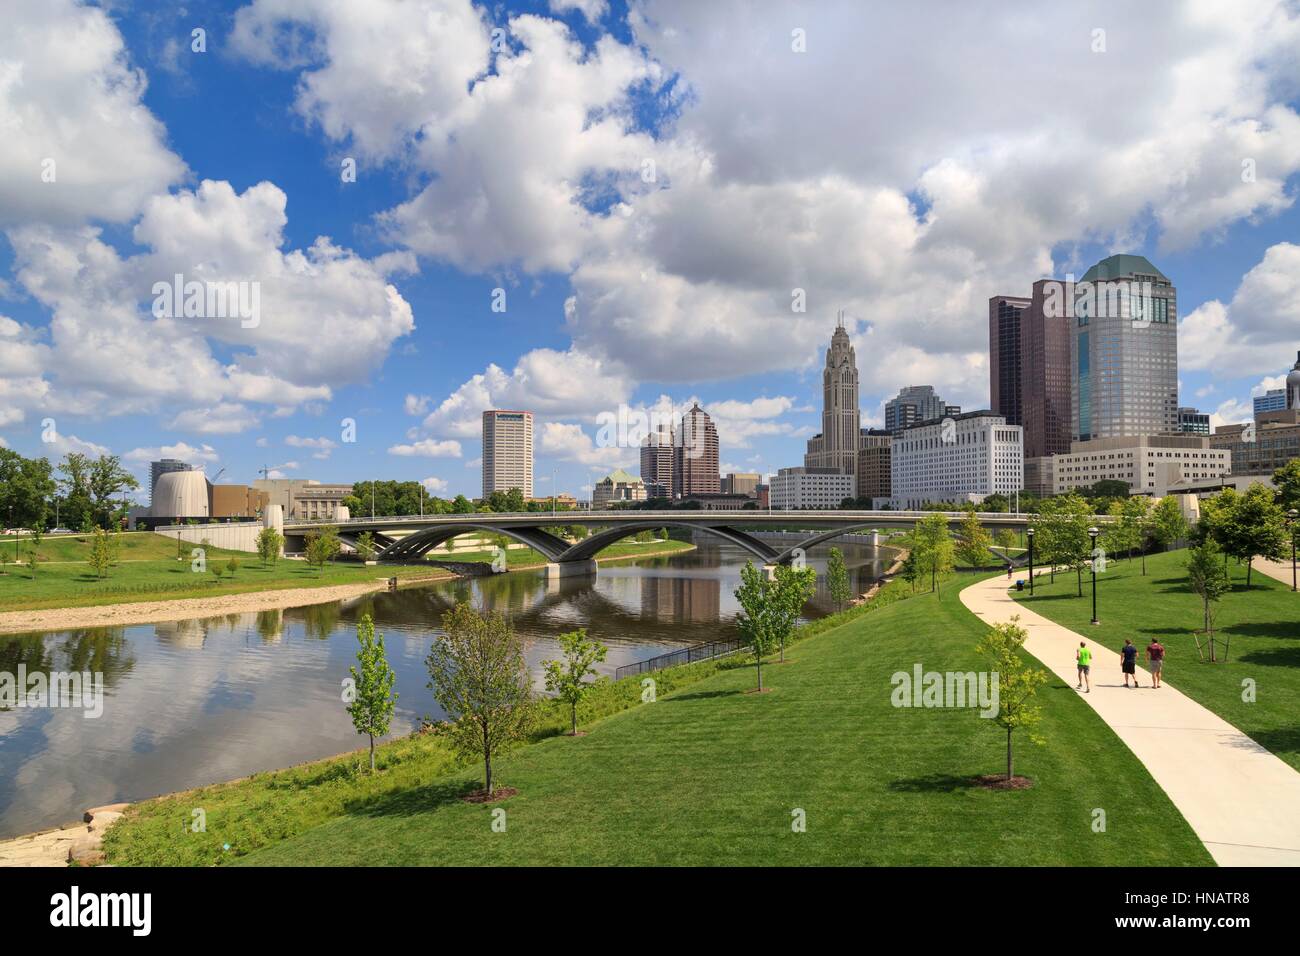 Scioto Mile Park and skyline, Downtown Columbus, Ohio, USA. Stock Photo